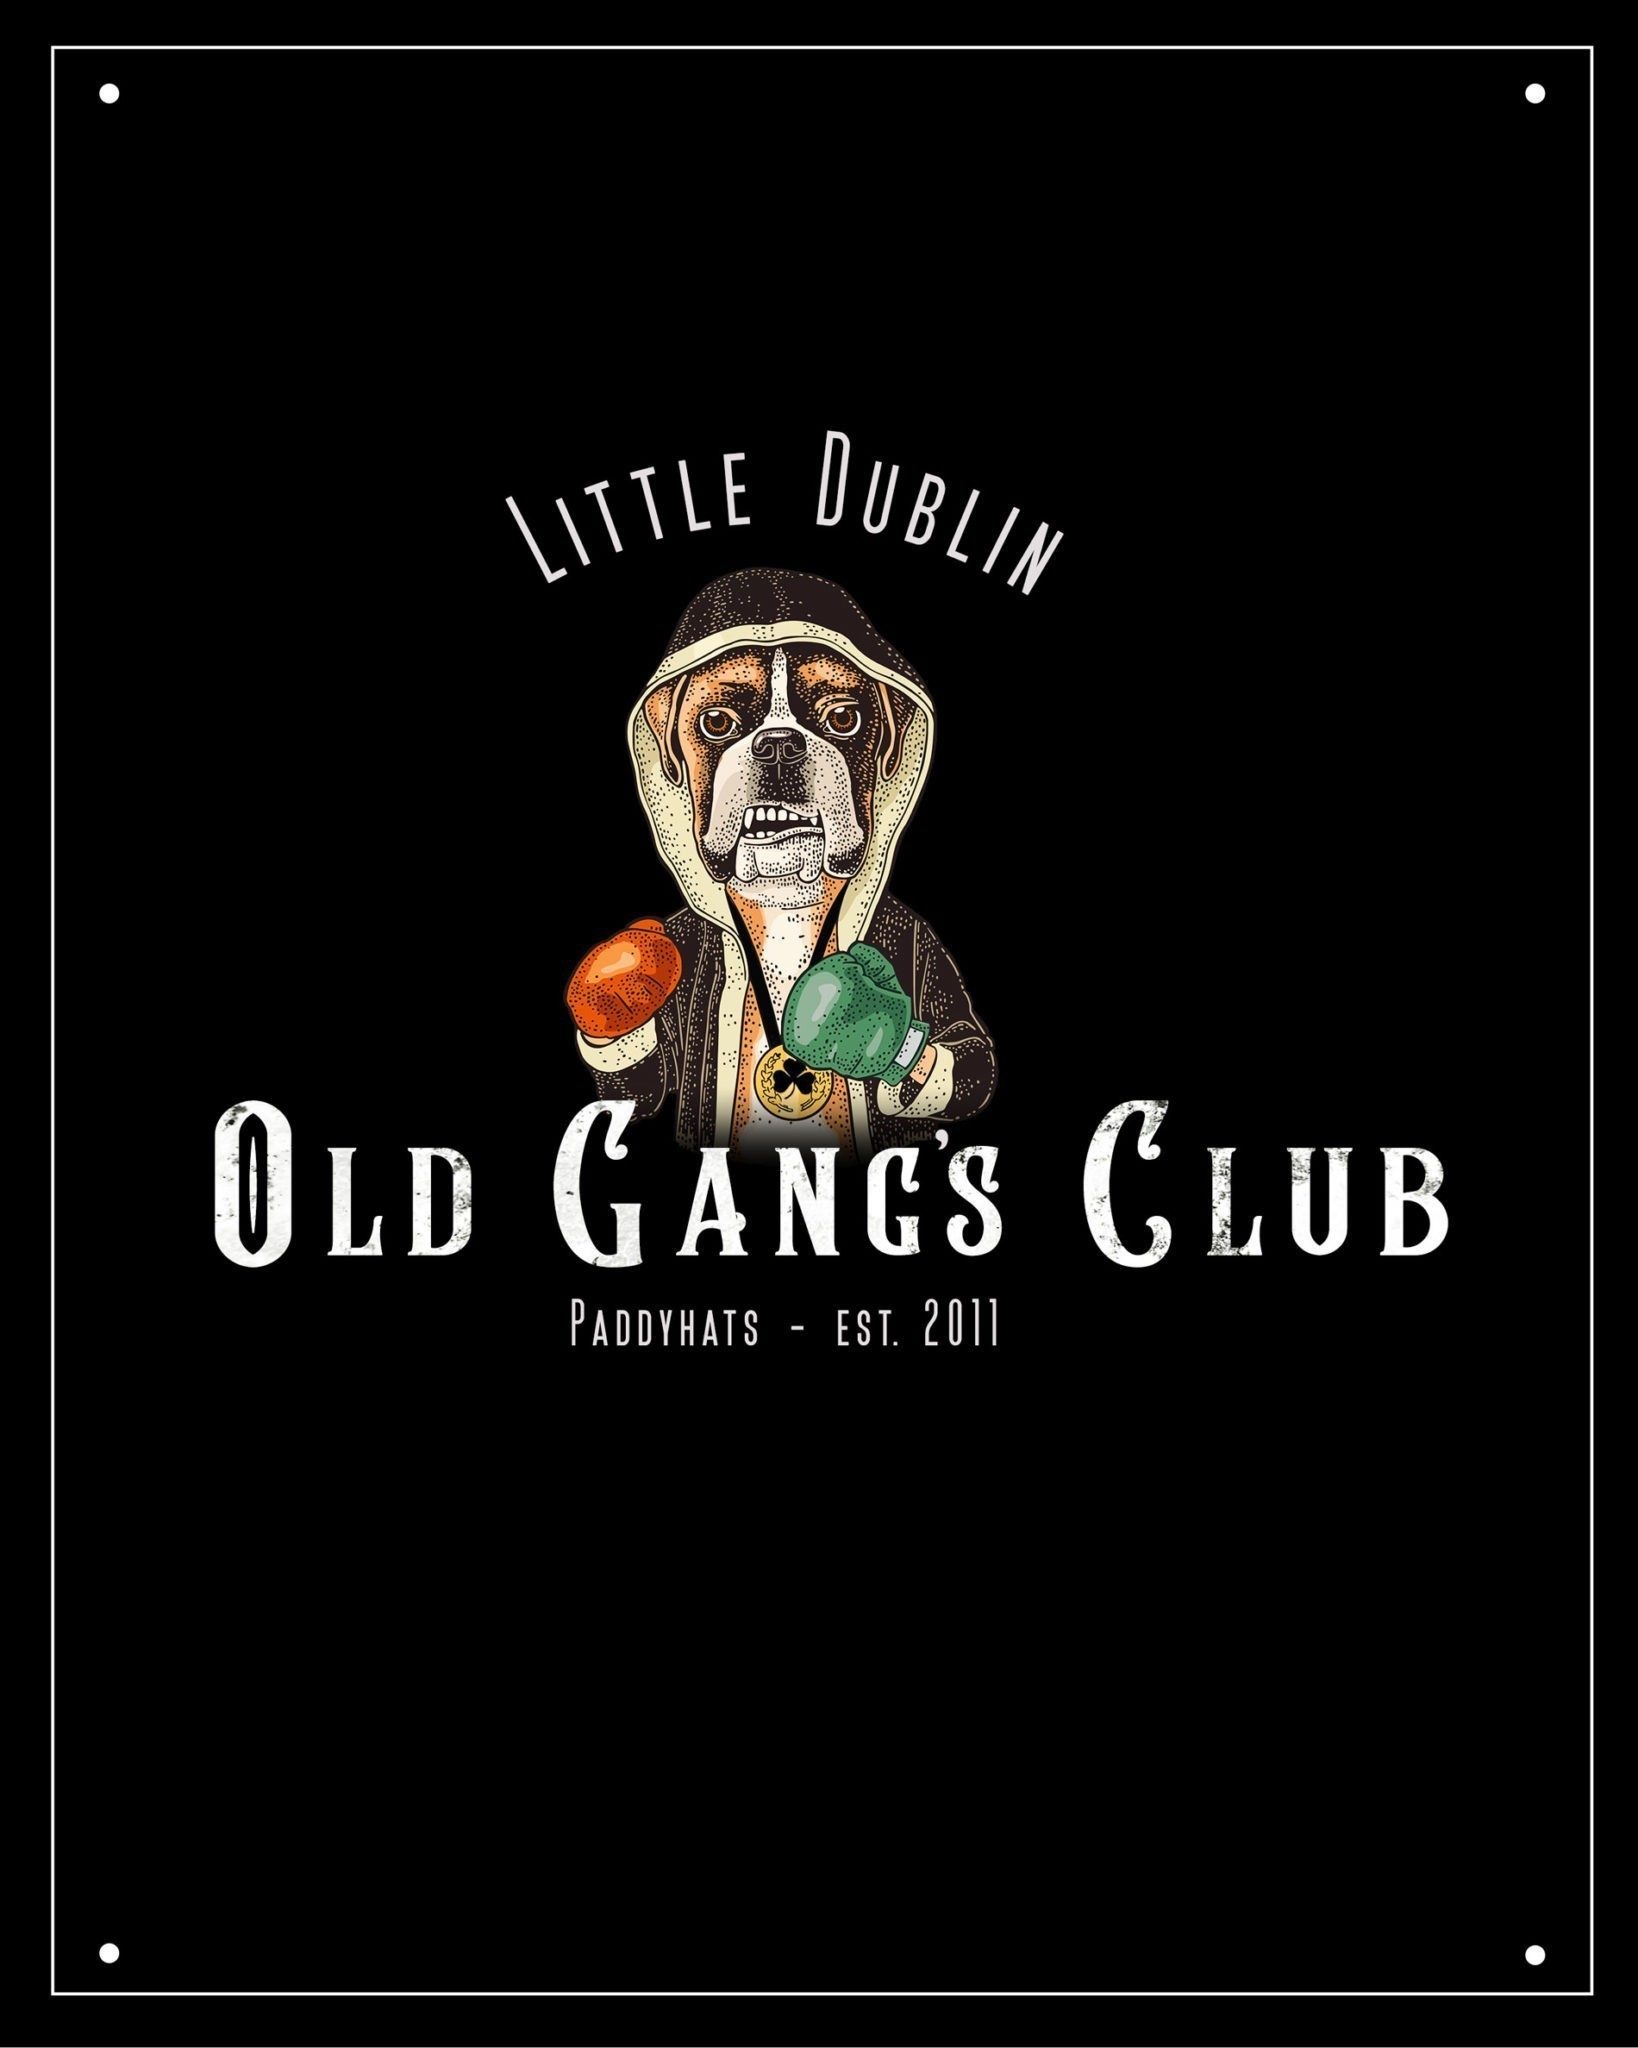 OLD GANG’S Club opent haar deuren